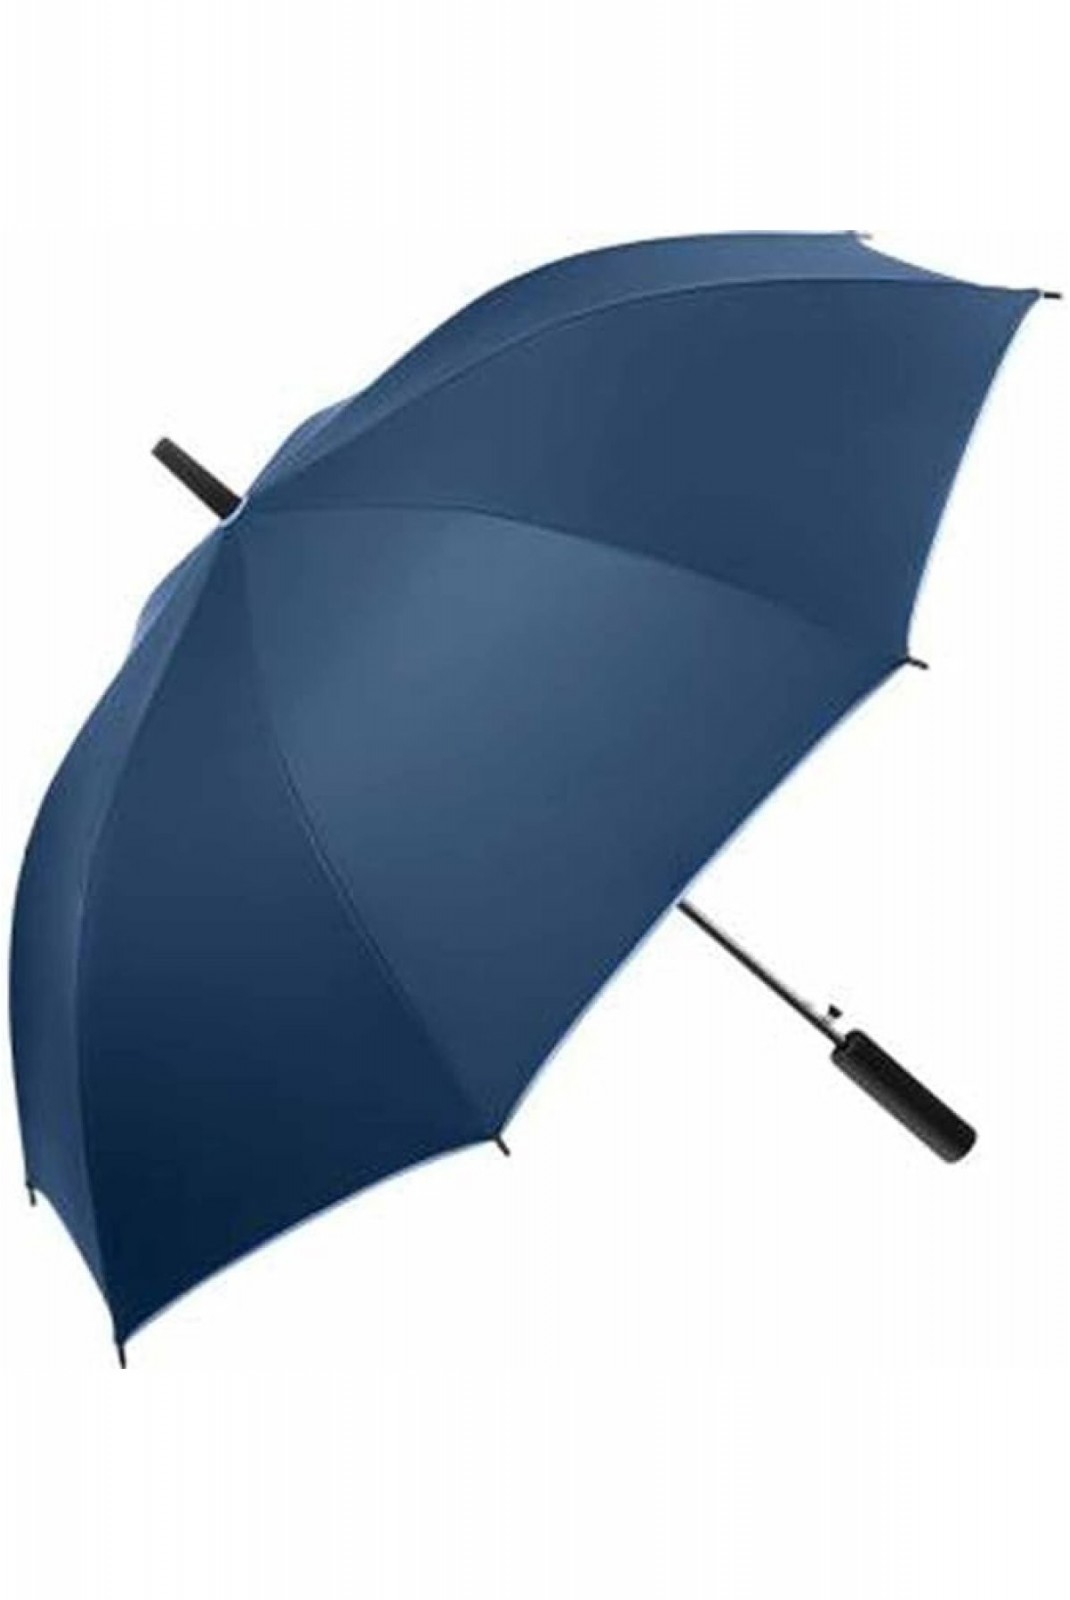 Parapluie canne bicolore Fare navy 1159